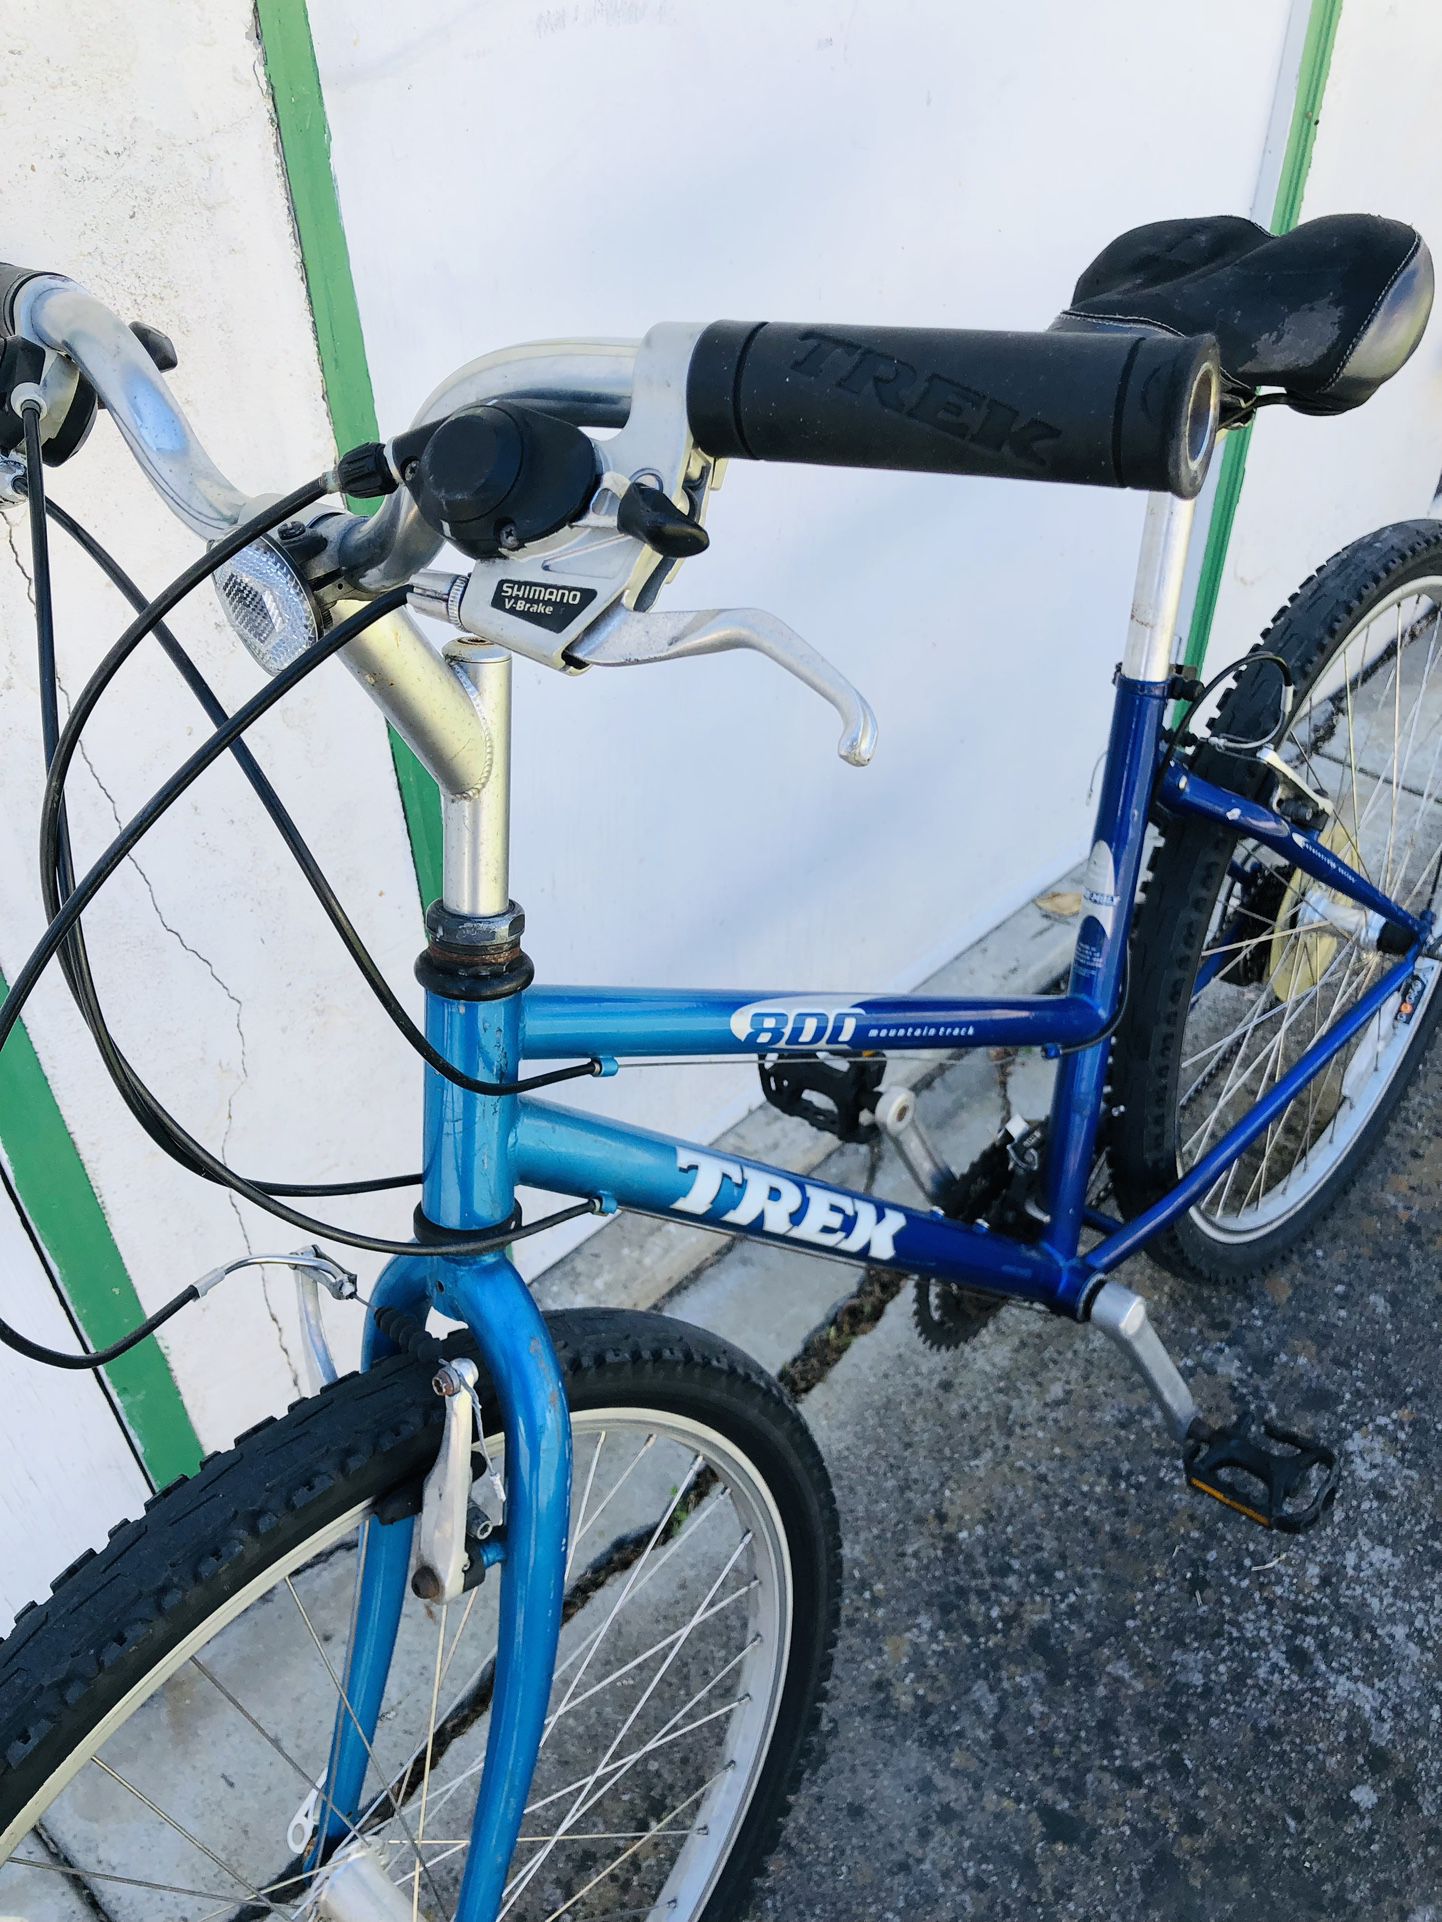 City Bike 